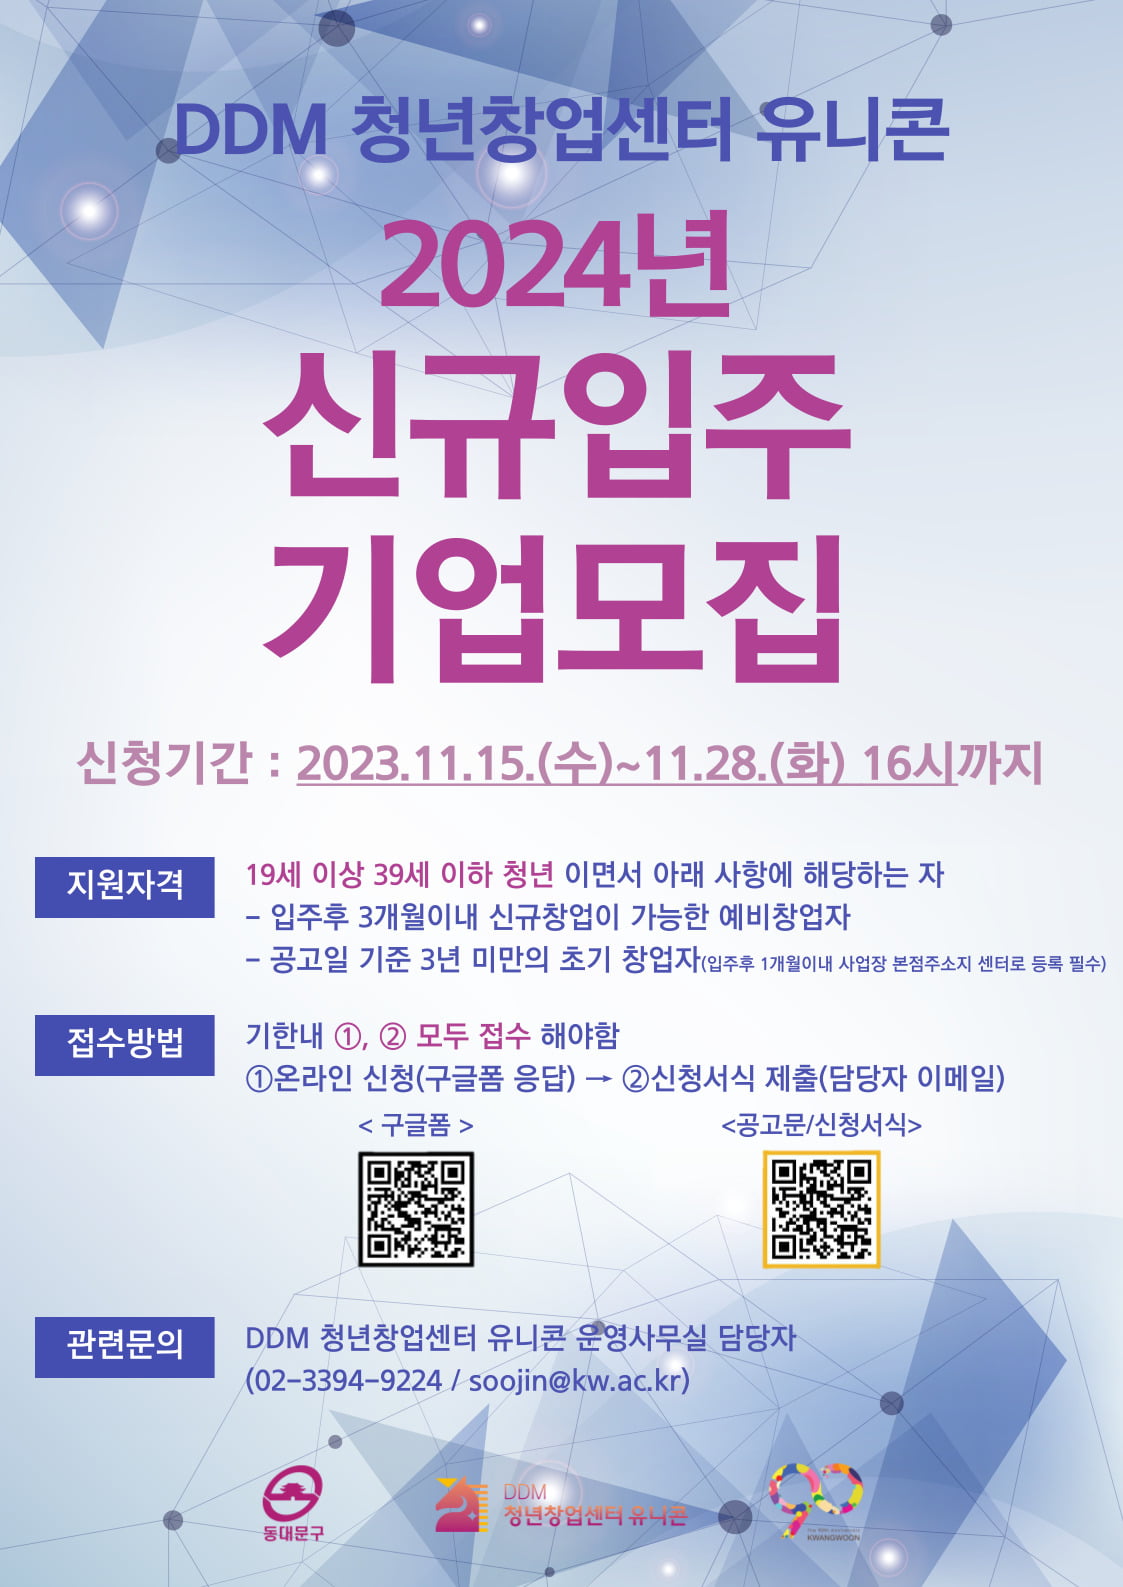 DDM 청년창업센터 유니콘, 2024년 신규 입주기업 모집